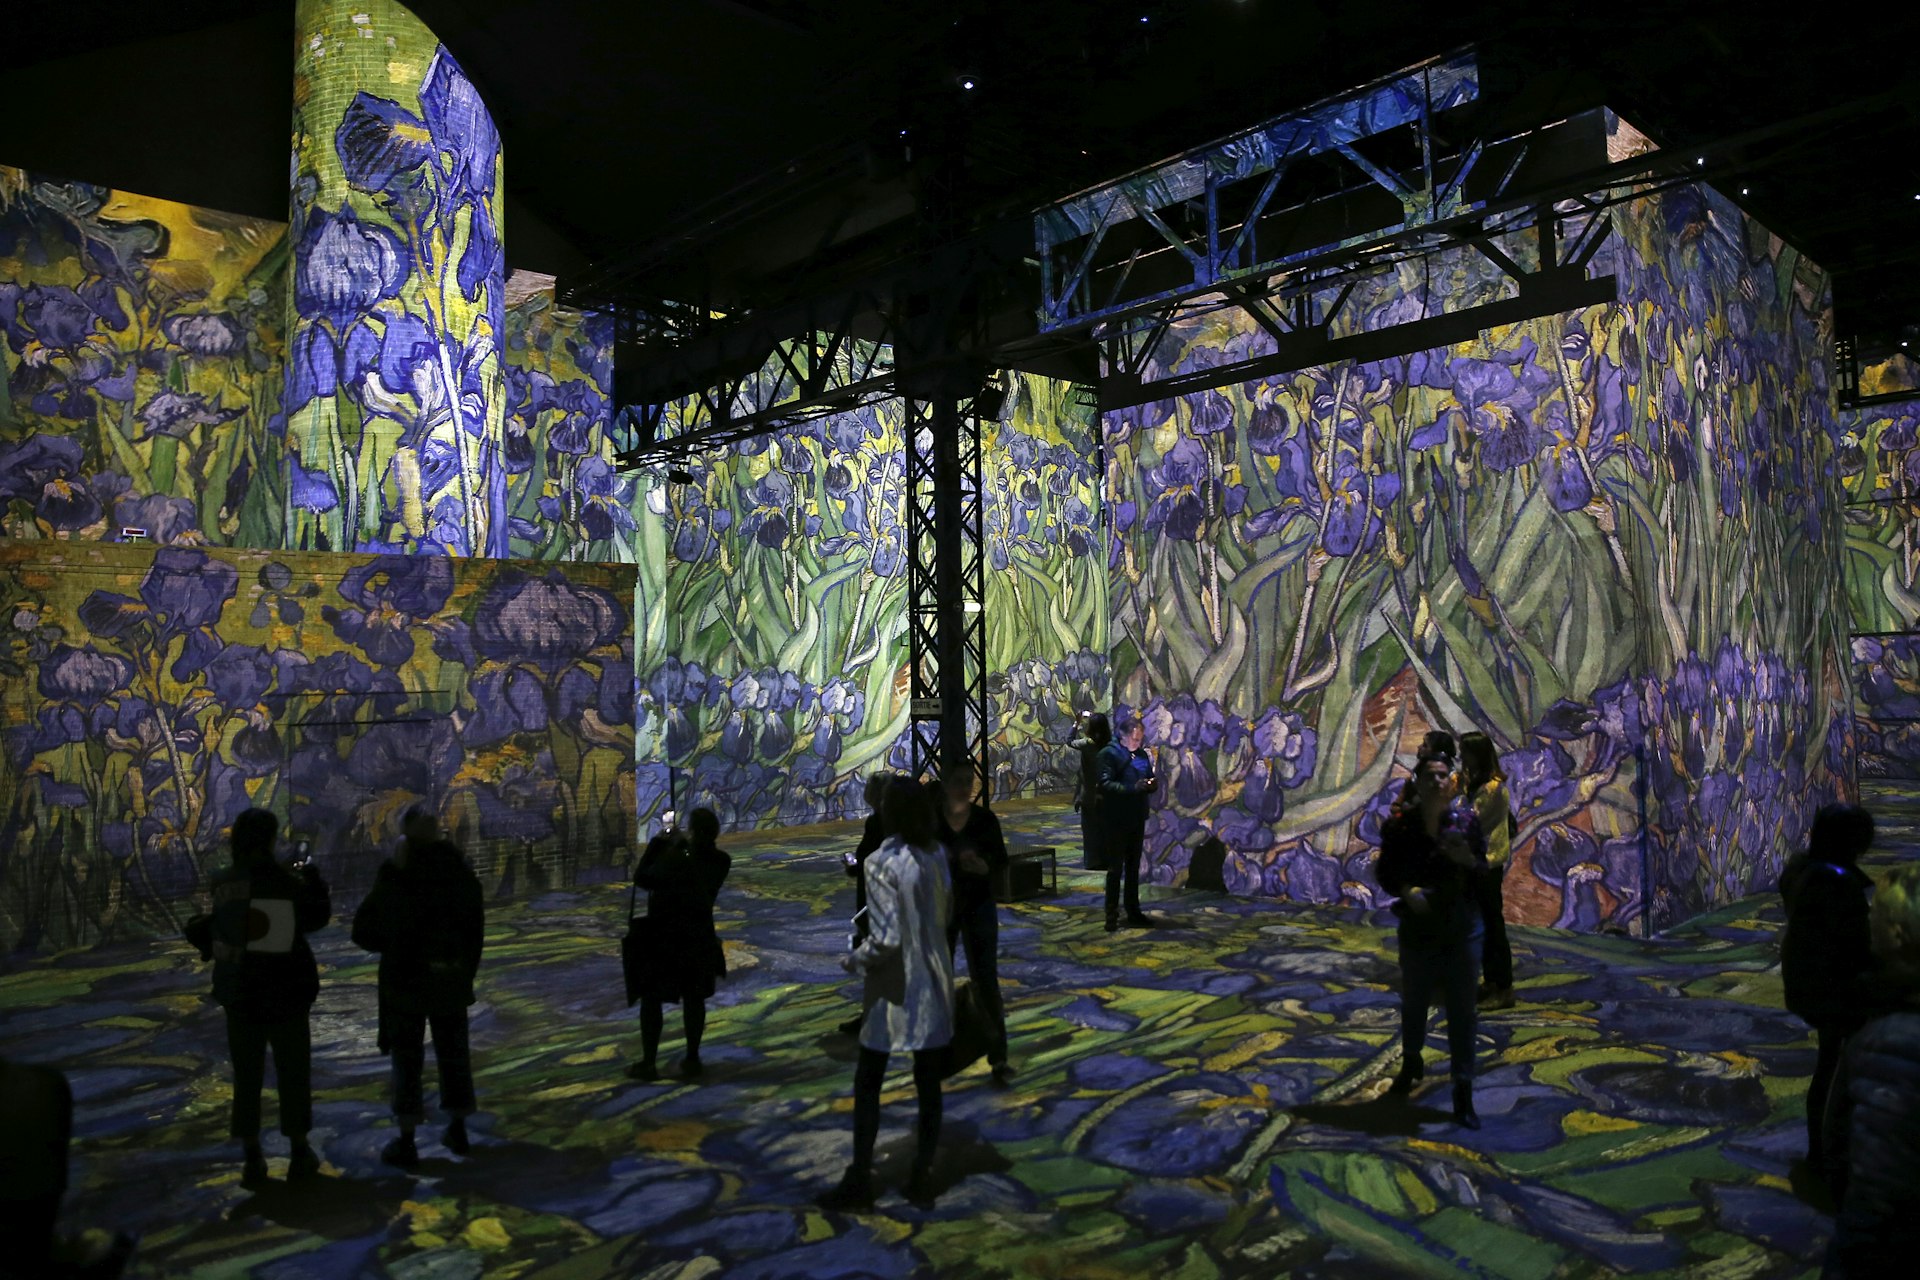 Digital Van Gogh exhibition